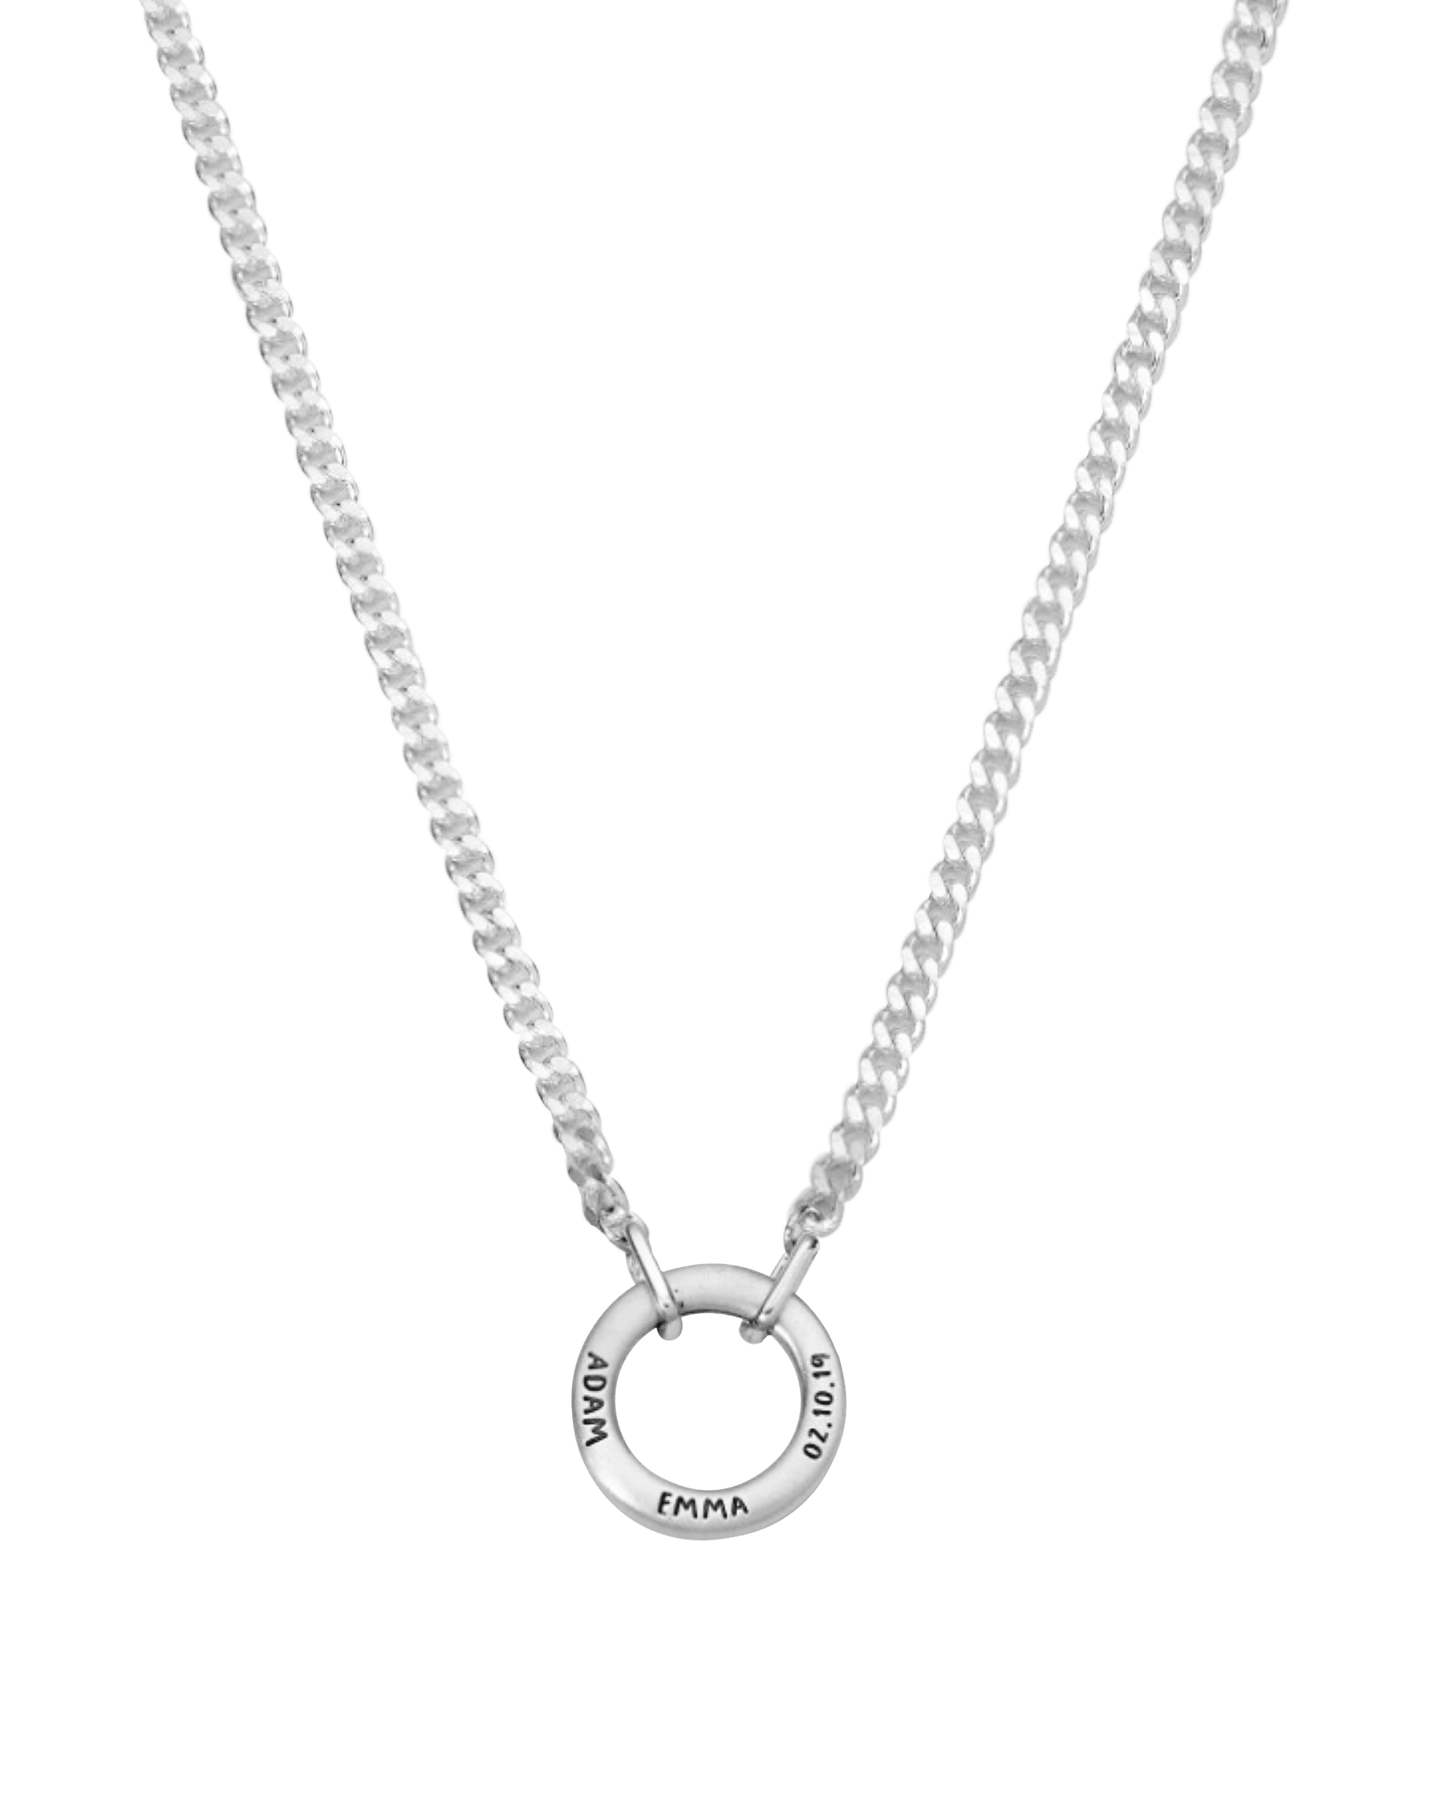 Men's Family Circle Necklace - 18K Gold Vermeil Necklaces magal-dev 